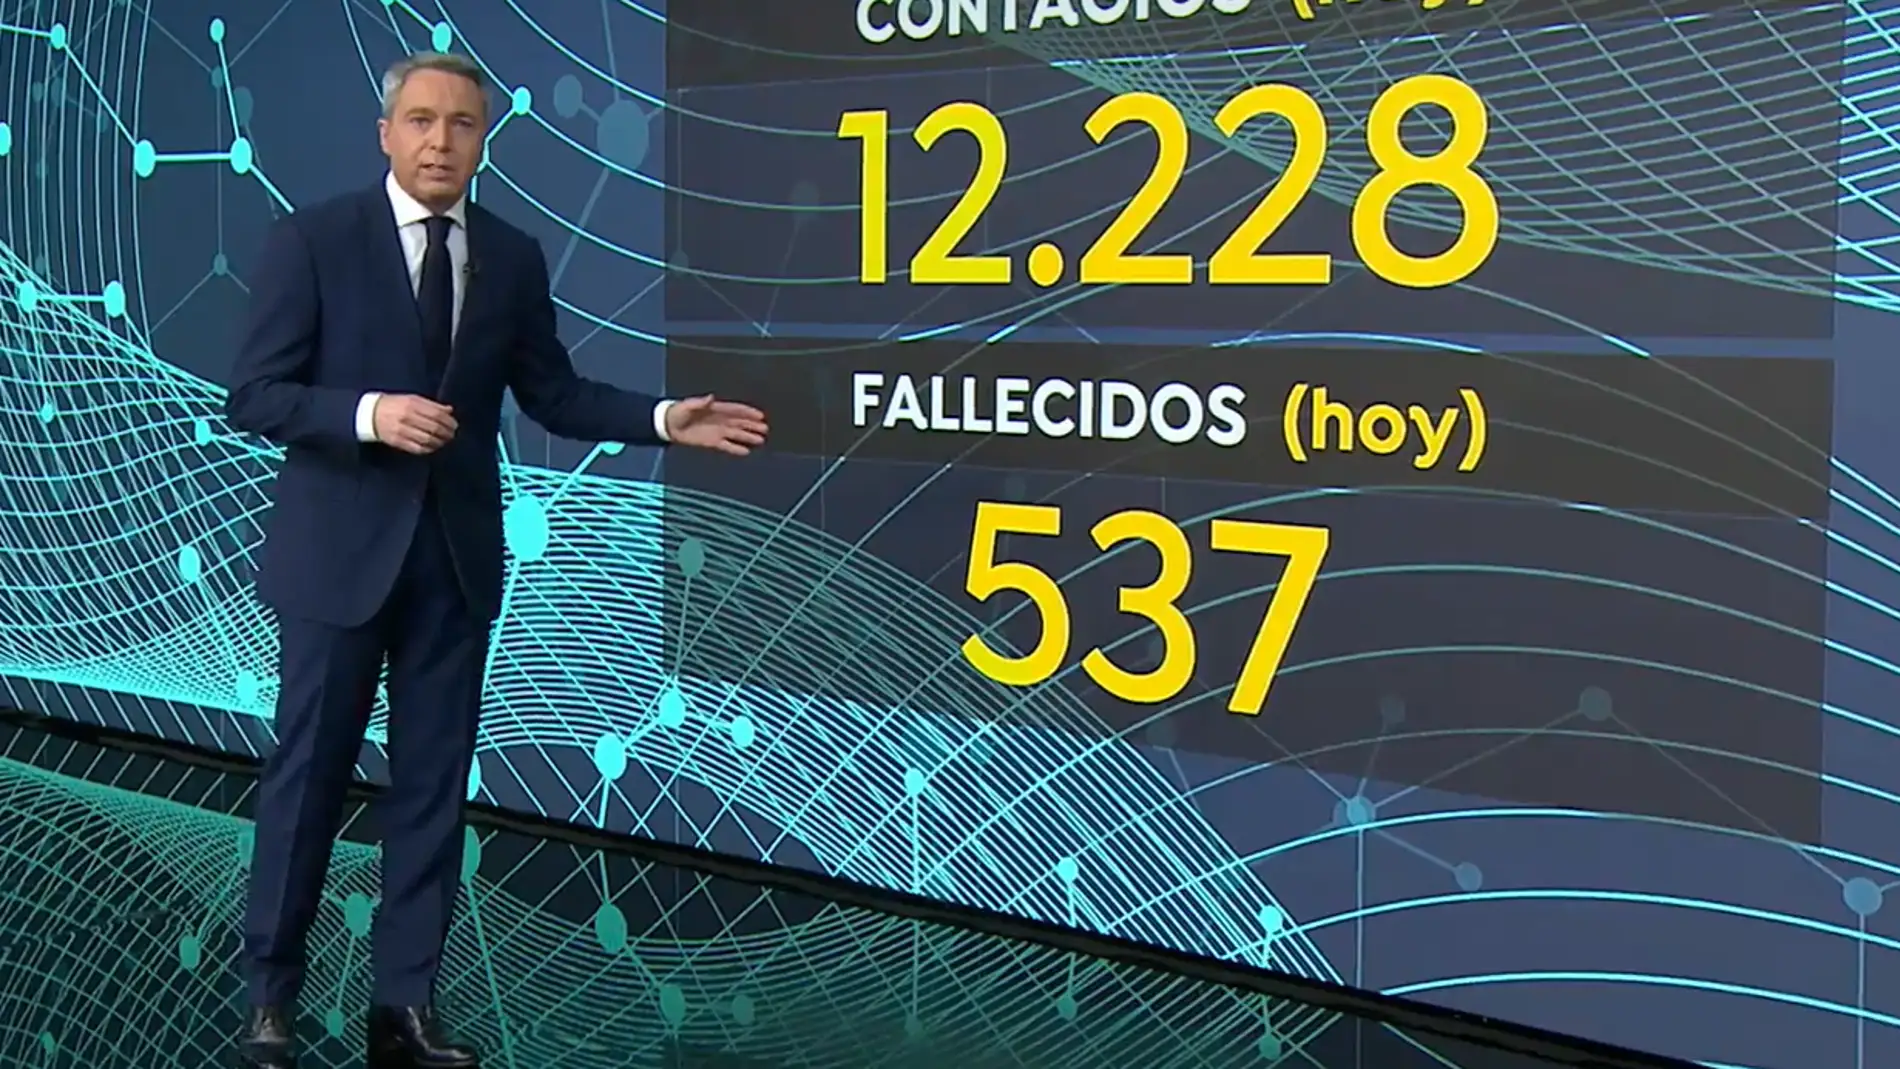 Vicente Vallés explica a qué se debe el aumento en el número de muertes por coronavirus en España